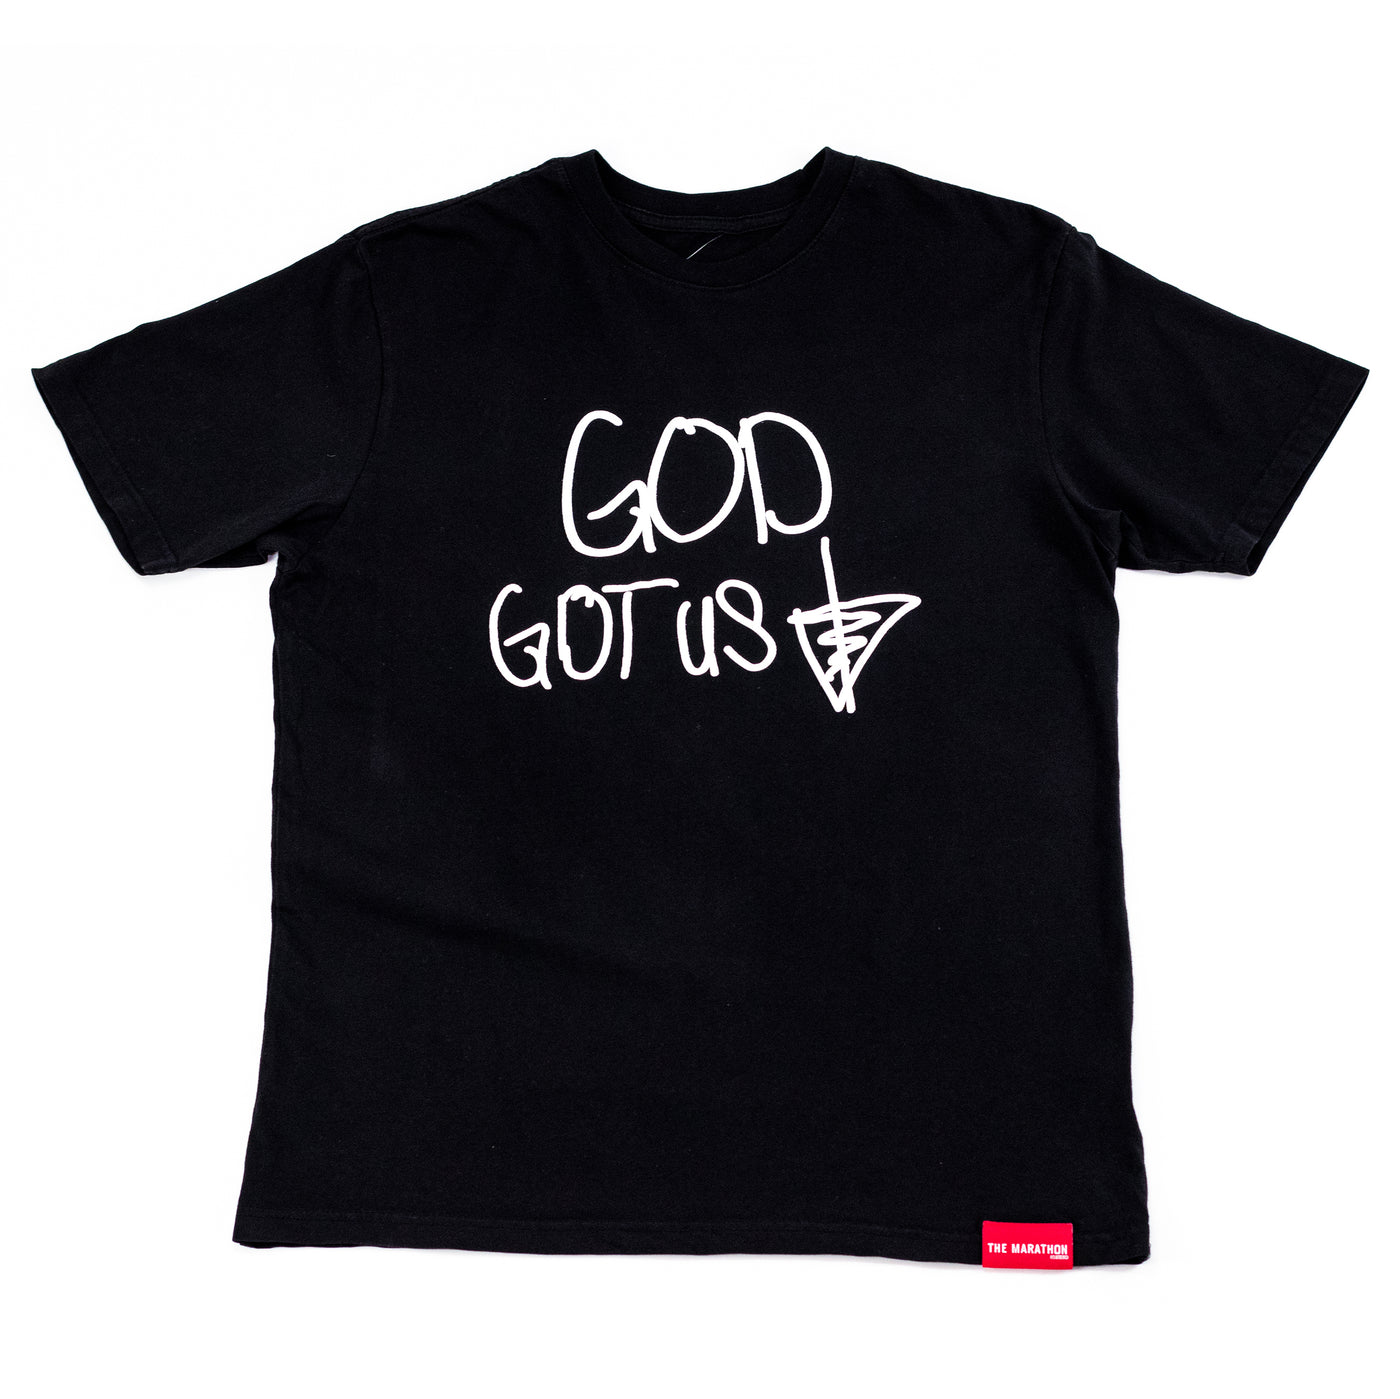 GOD Got Us T-shirt - Black/White